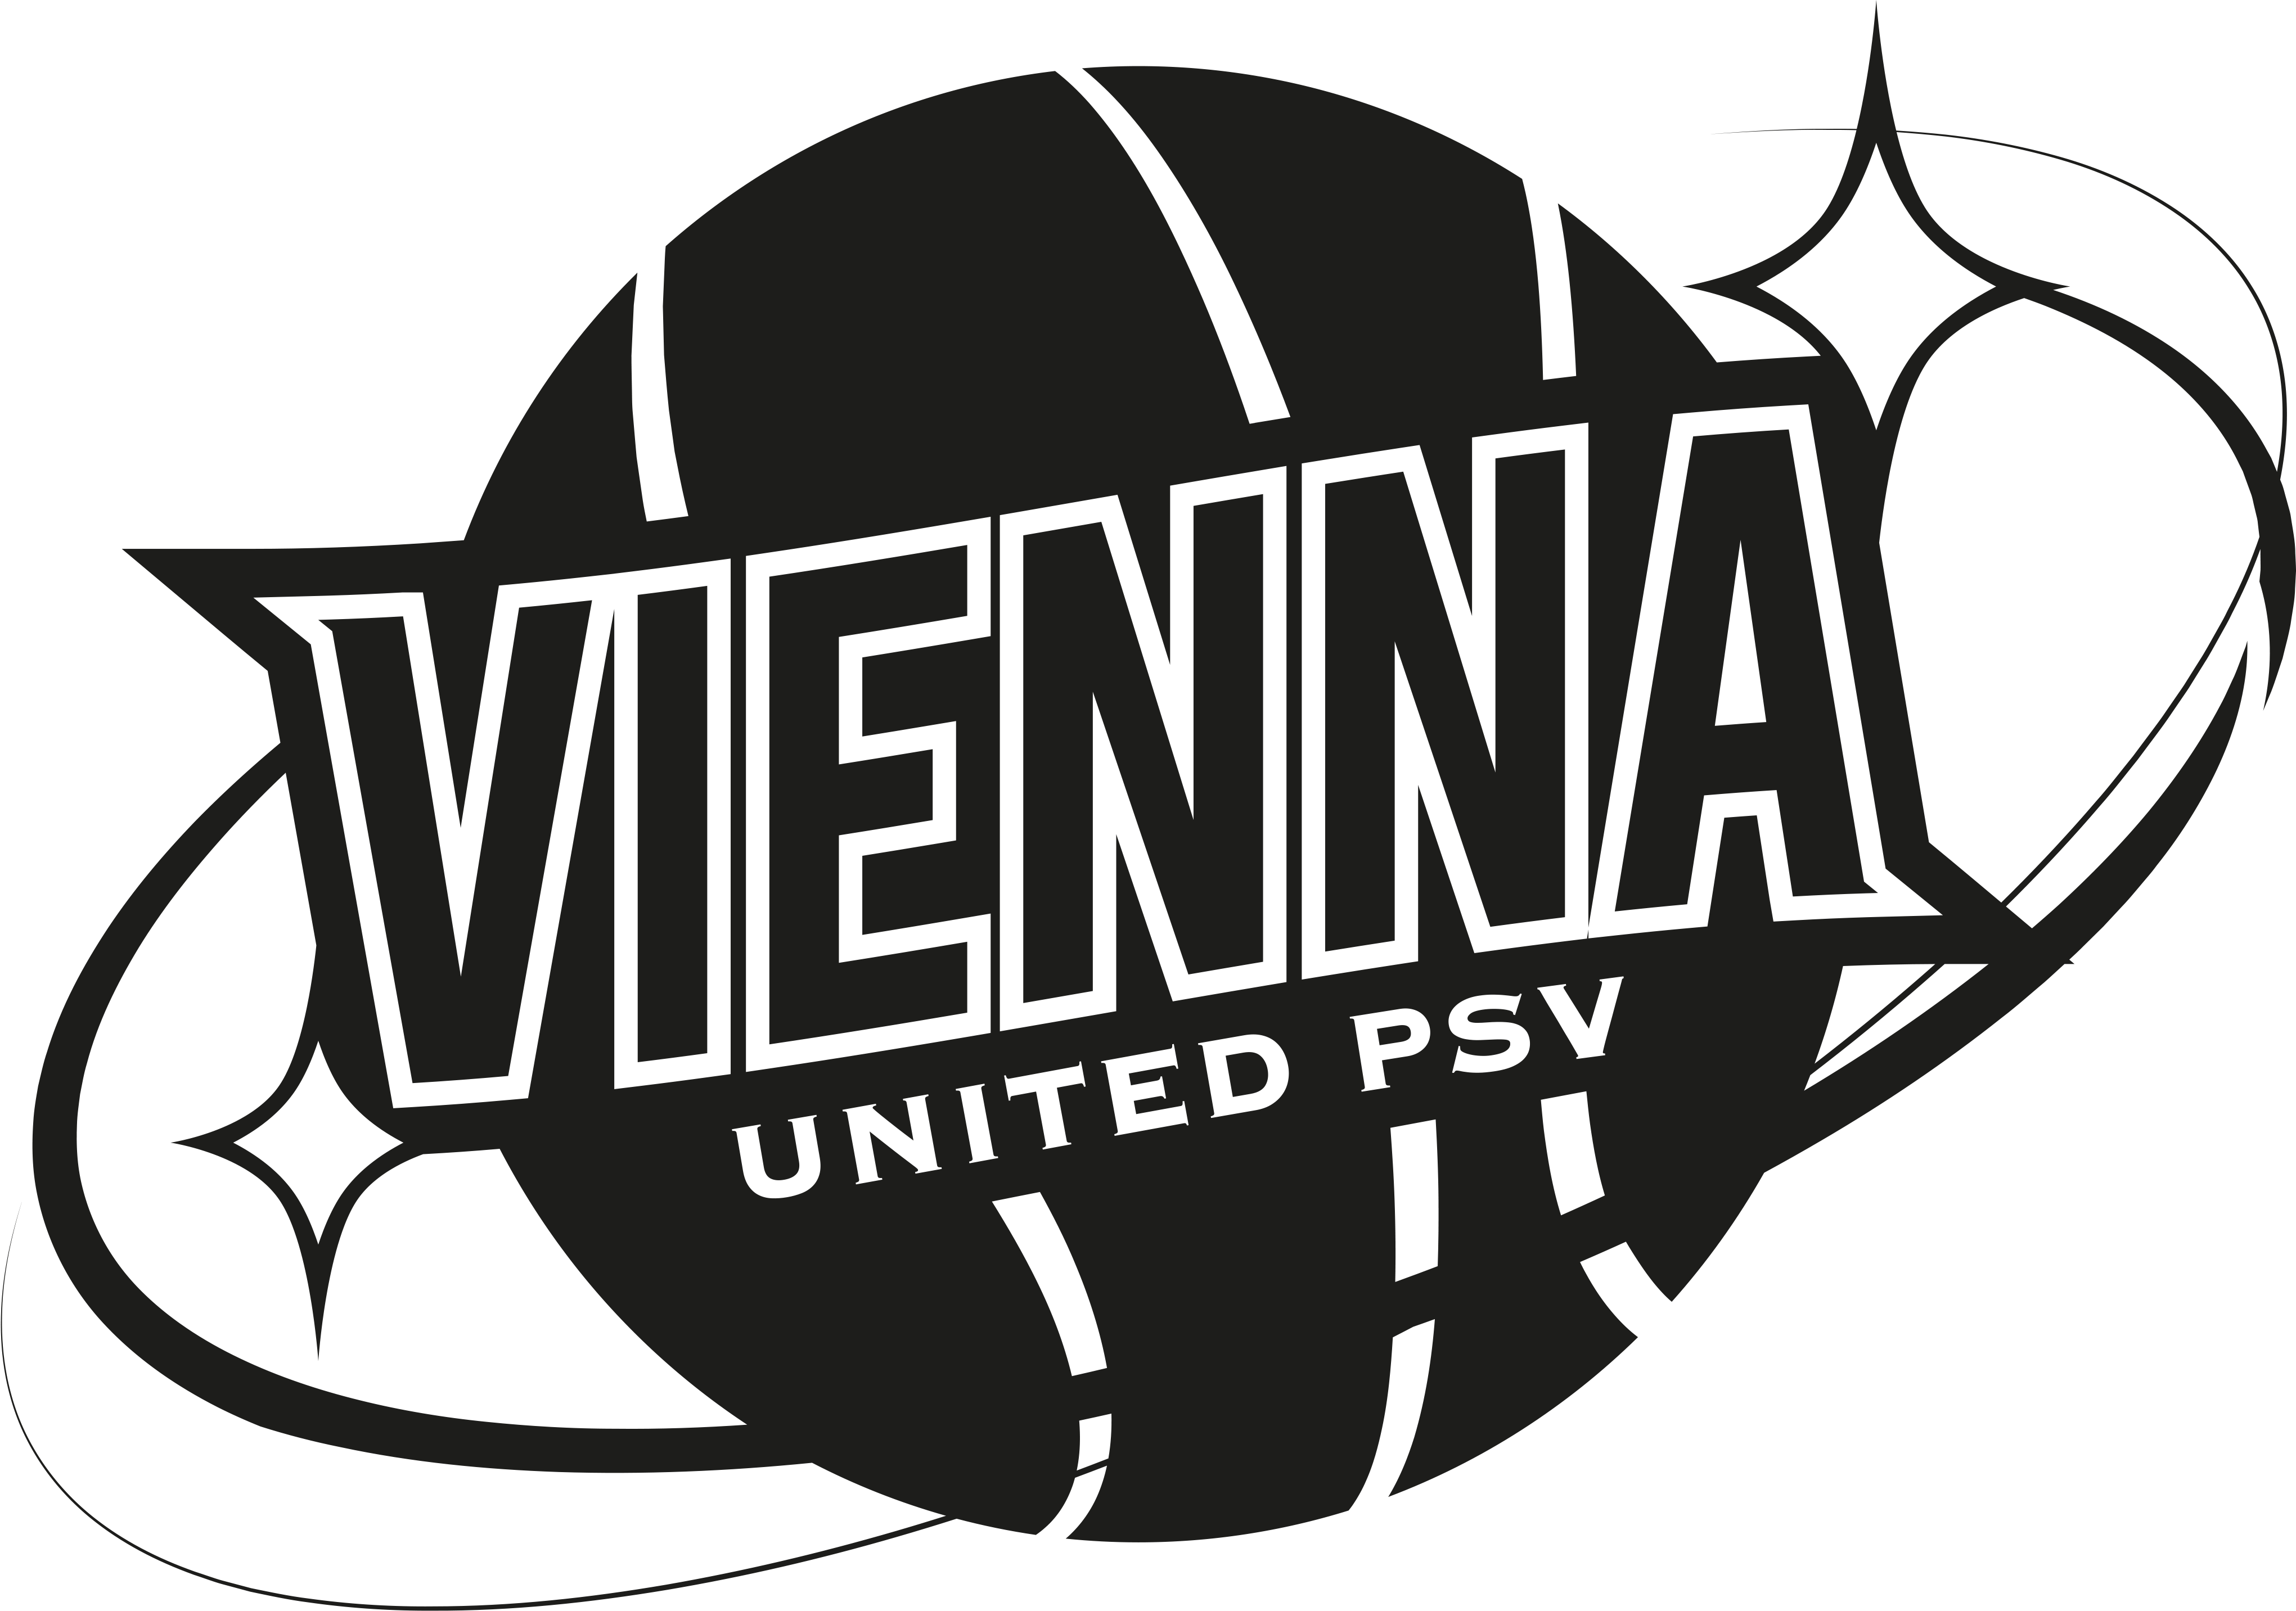 Vienna United